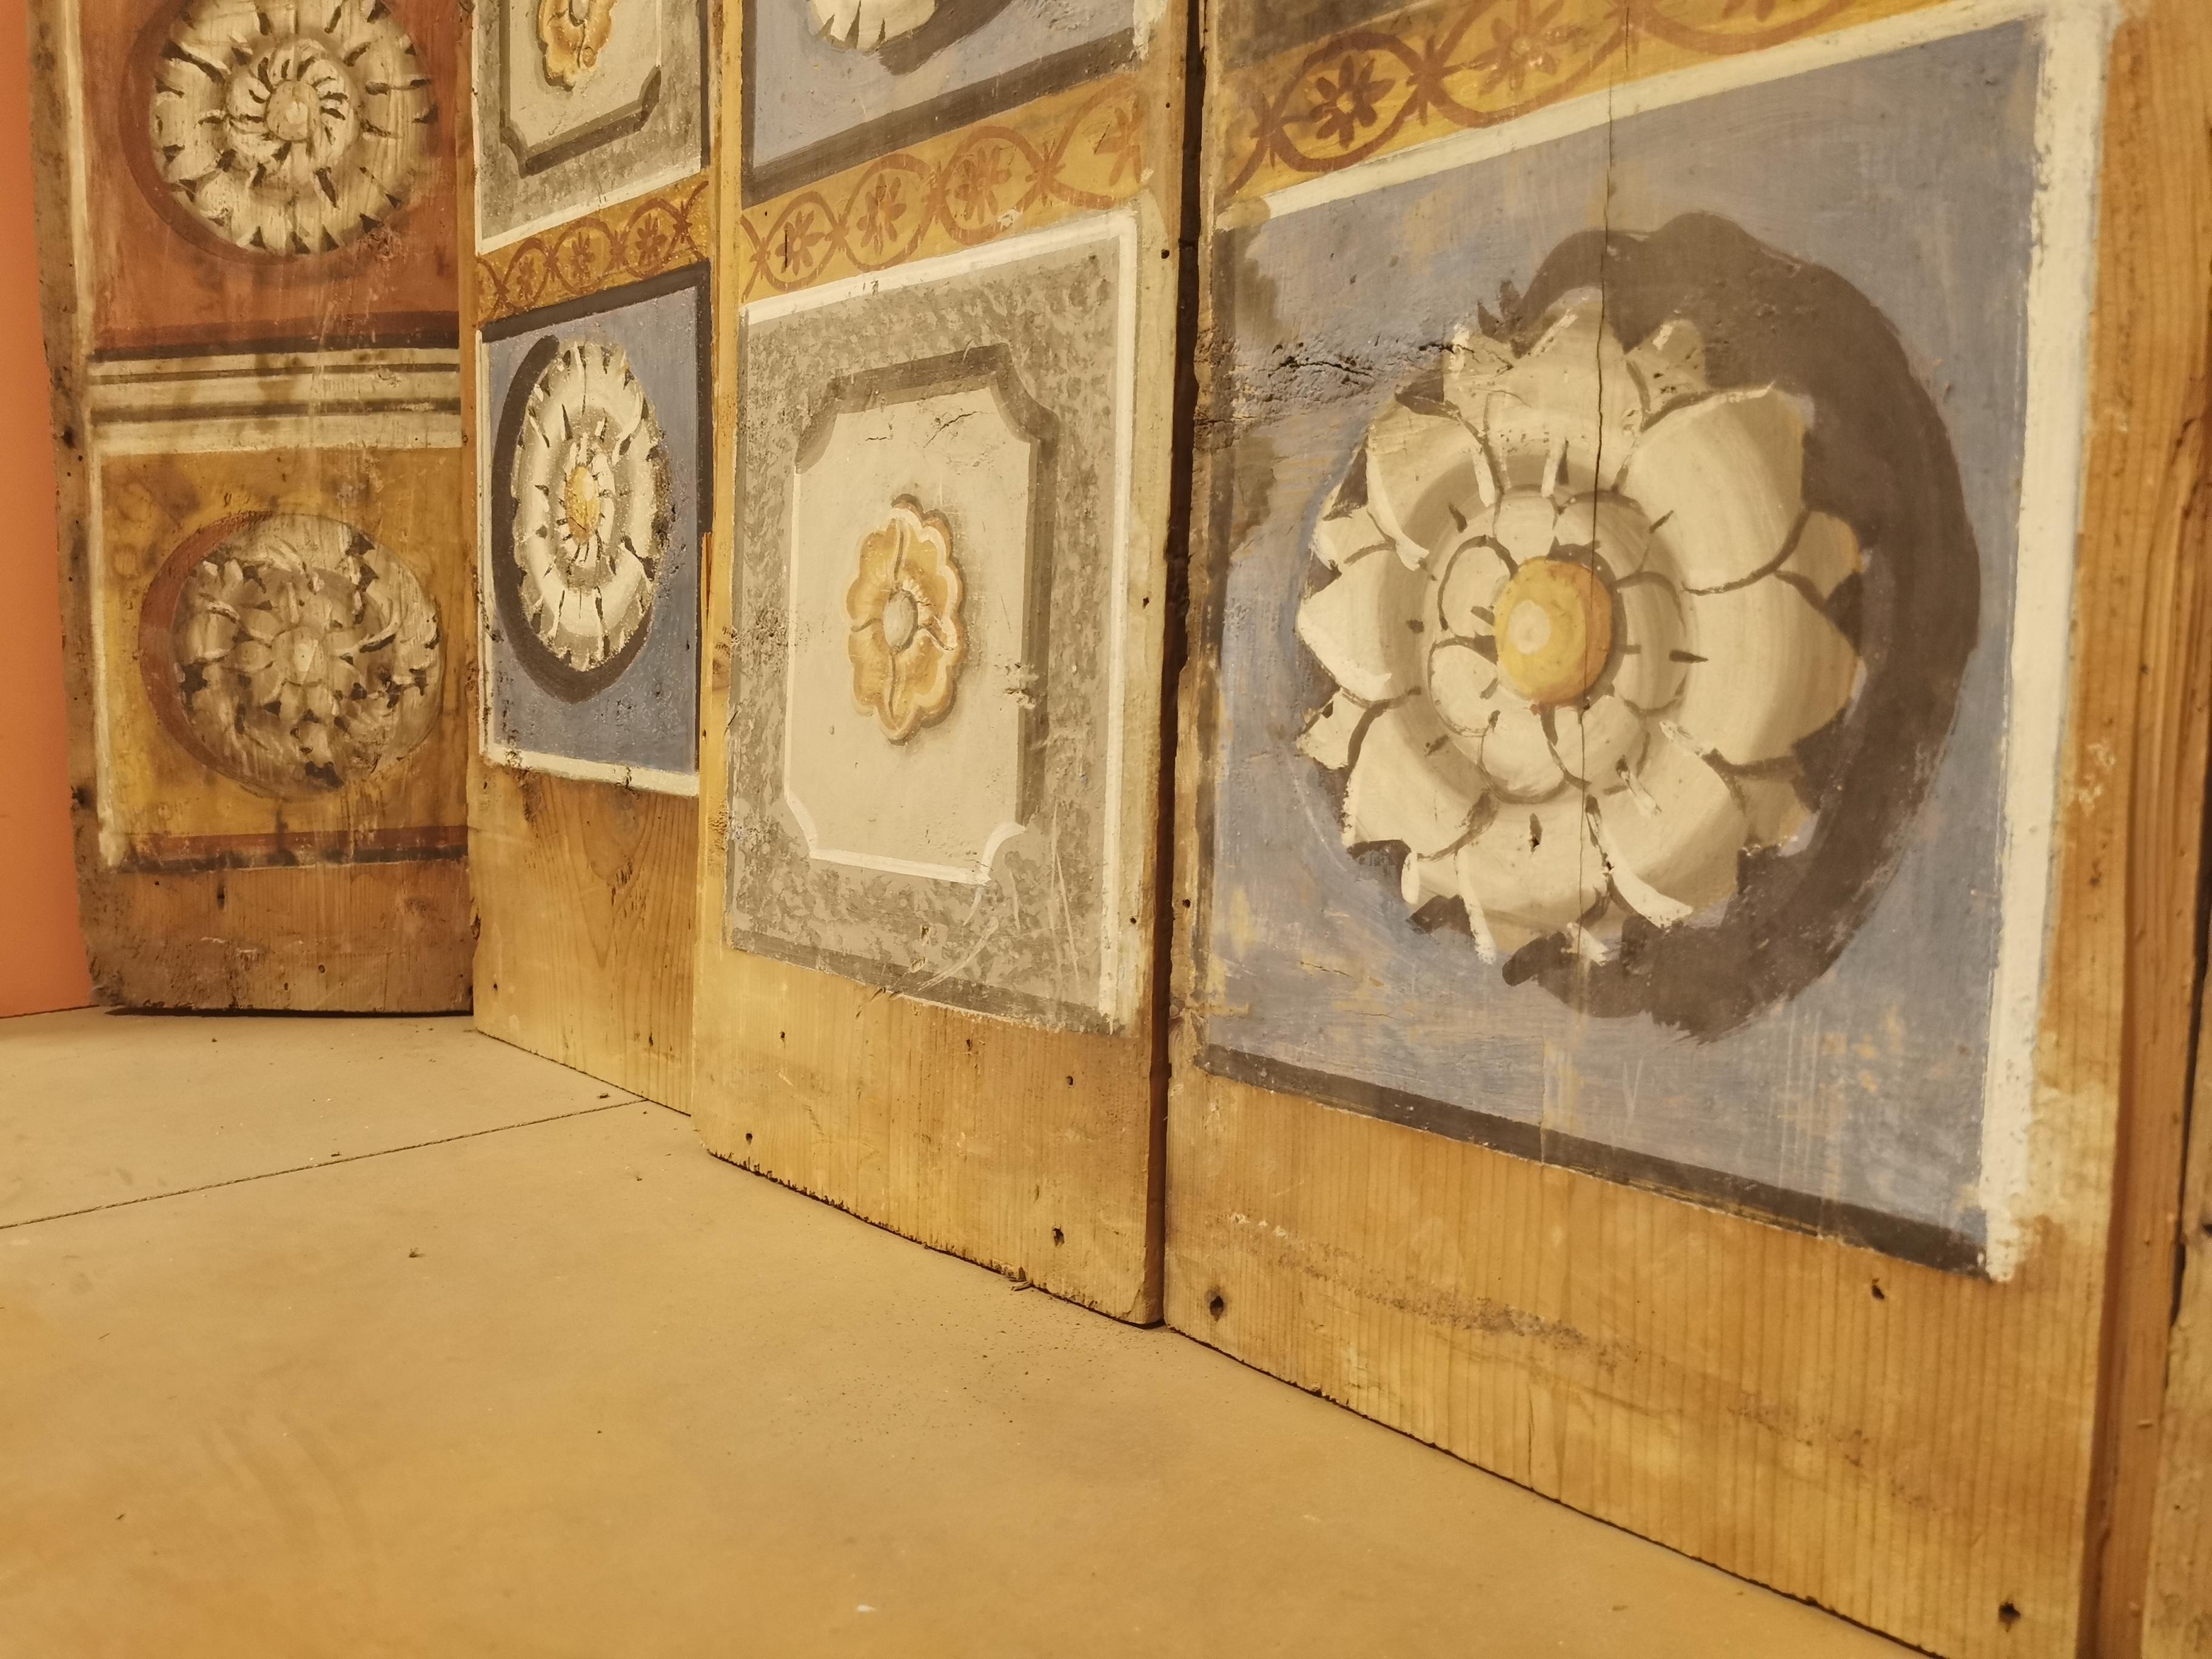 N. 55 Tannenholz-Deckenplatten, mit Tempera bemalt, mit geometrischen und floralen Mustern.

Diese Art von Deckenwänden wurde auf Sockeln montiert, die ebenfalls verziert und bemalt waren.

Periode: Ende 1600 bis Anfang 1700
Provenienz: